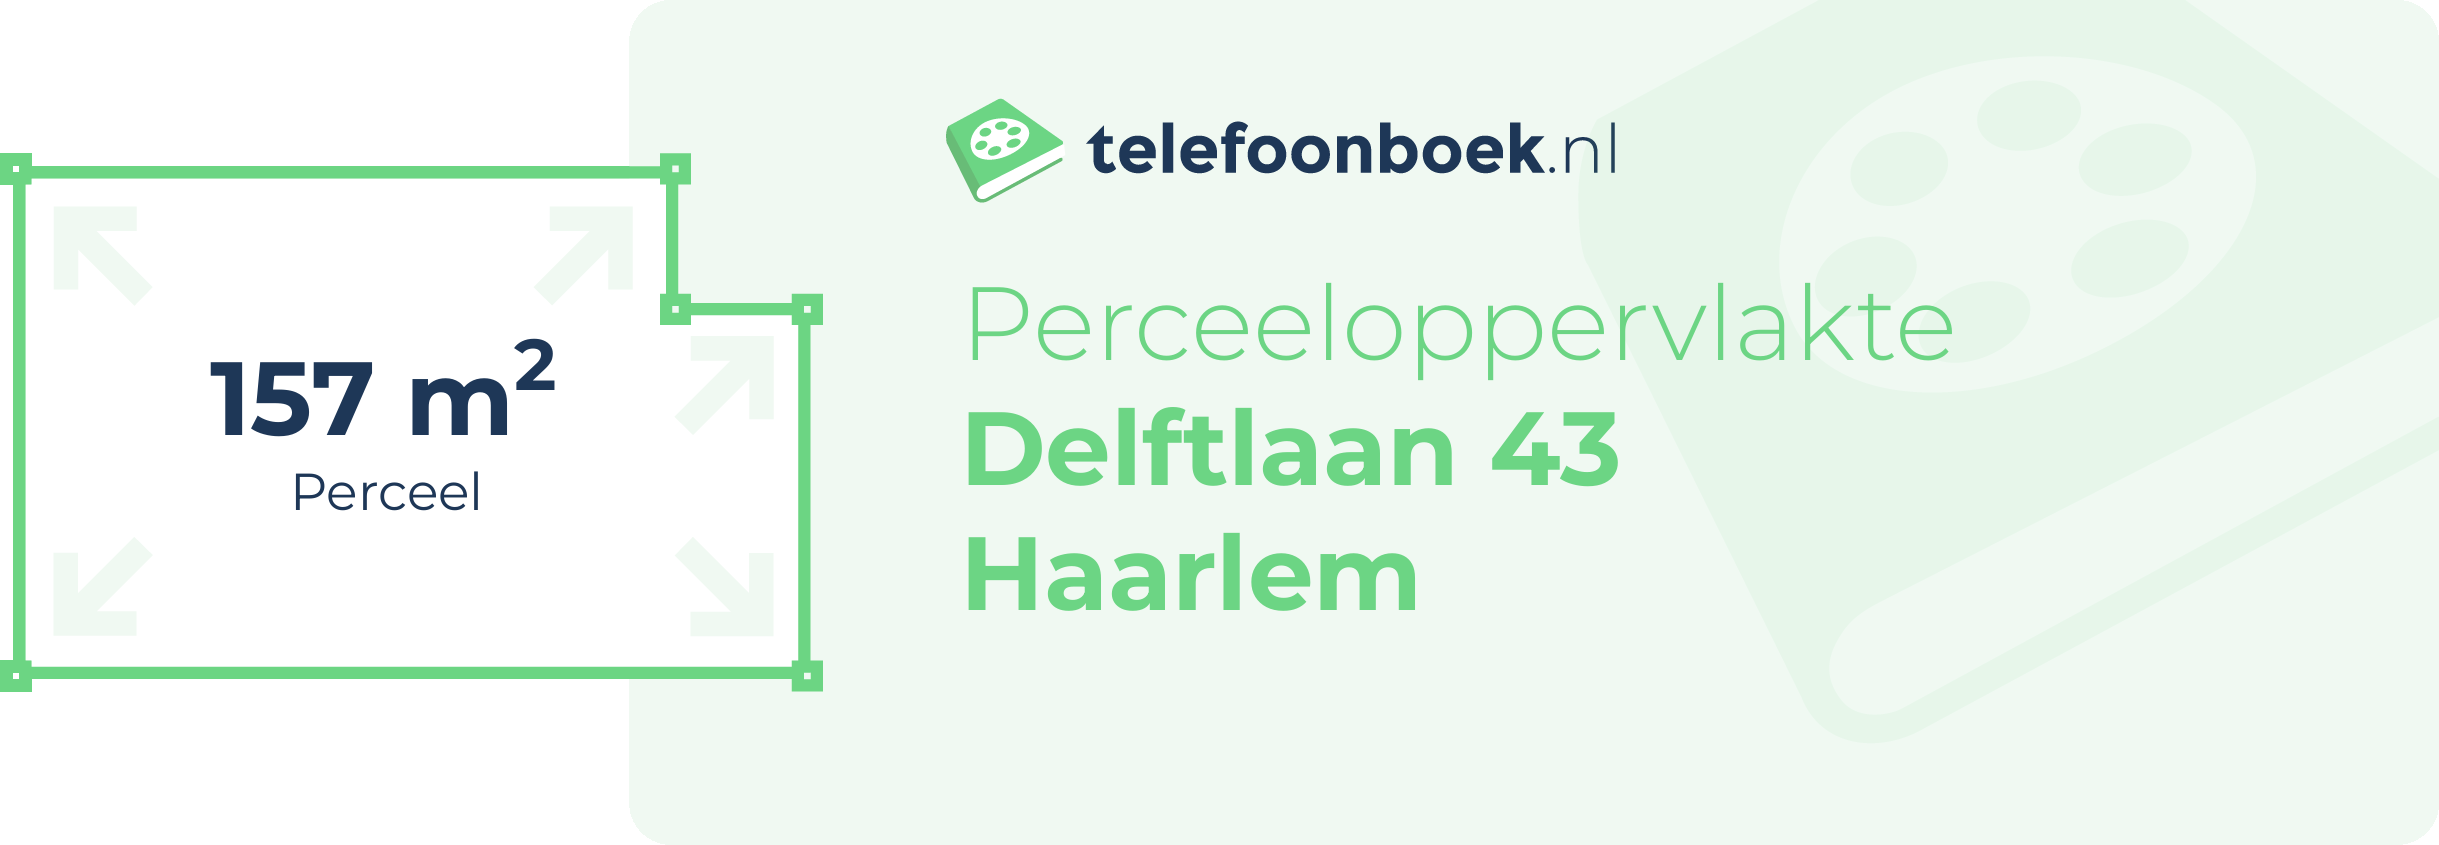 Perceeloppervlakte Delftlaan 43 Haarlem